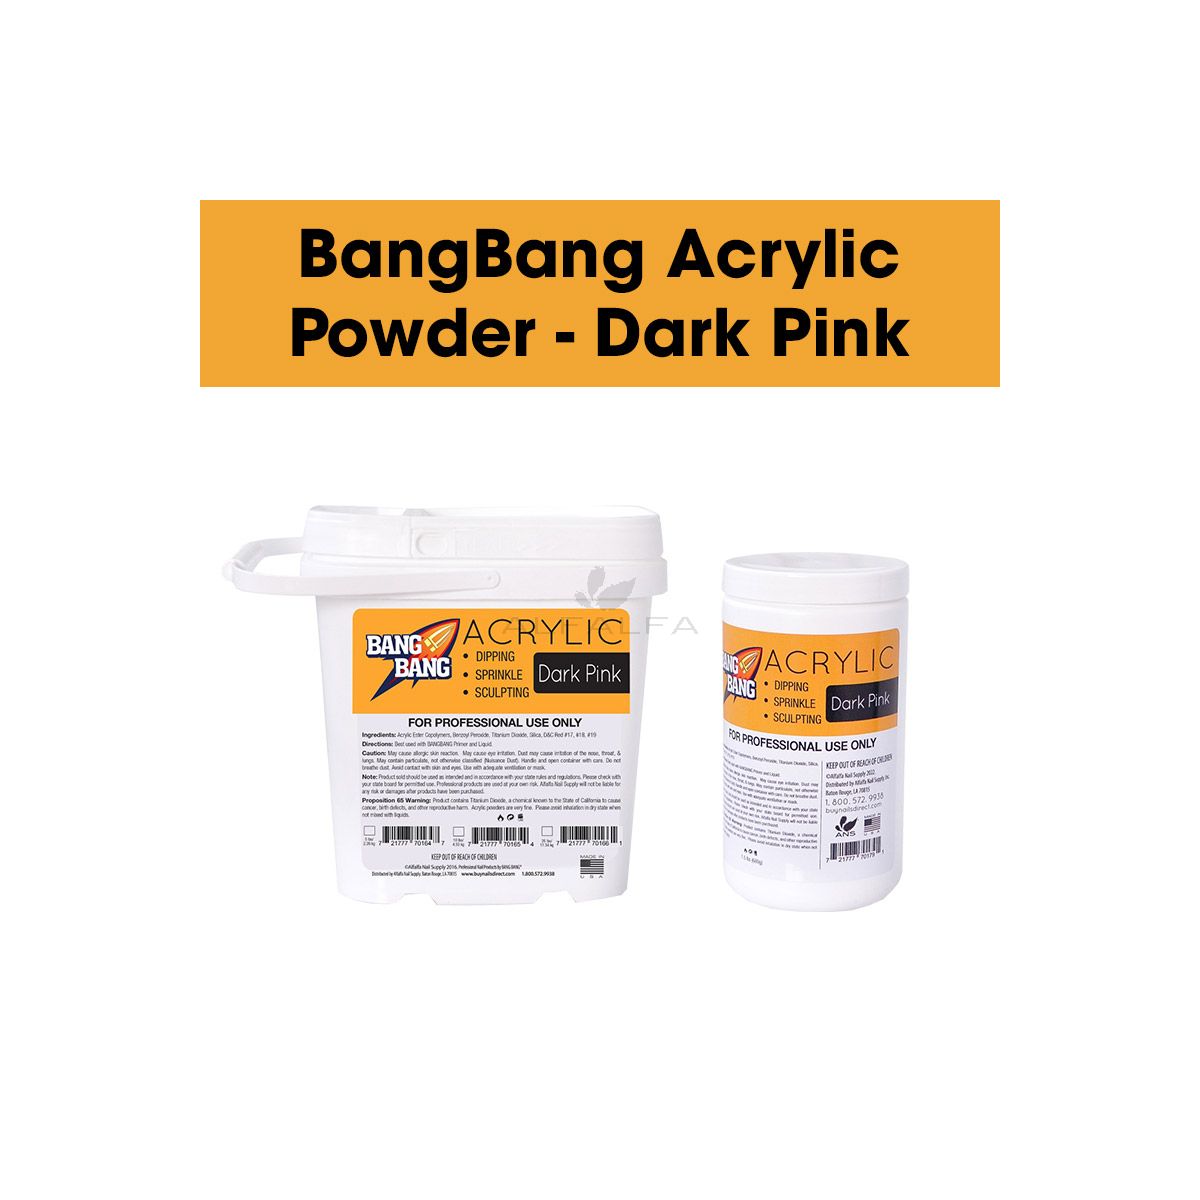 BangBang Acrylic Powder - Dark Pink